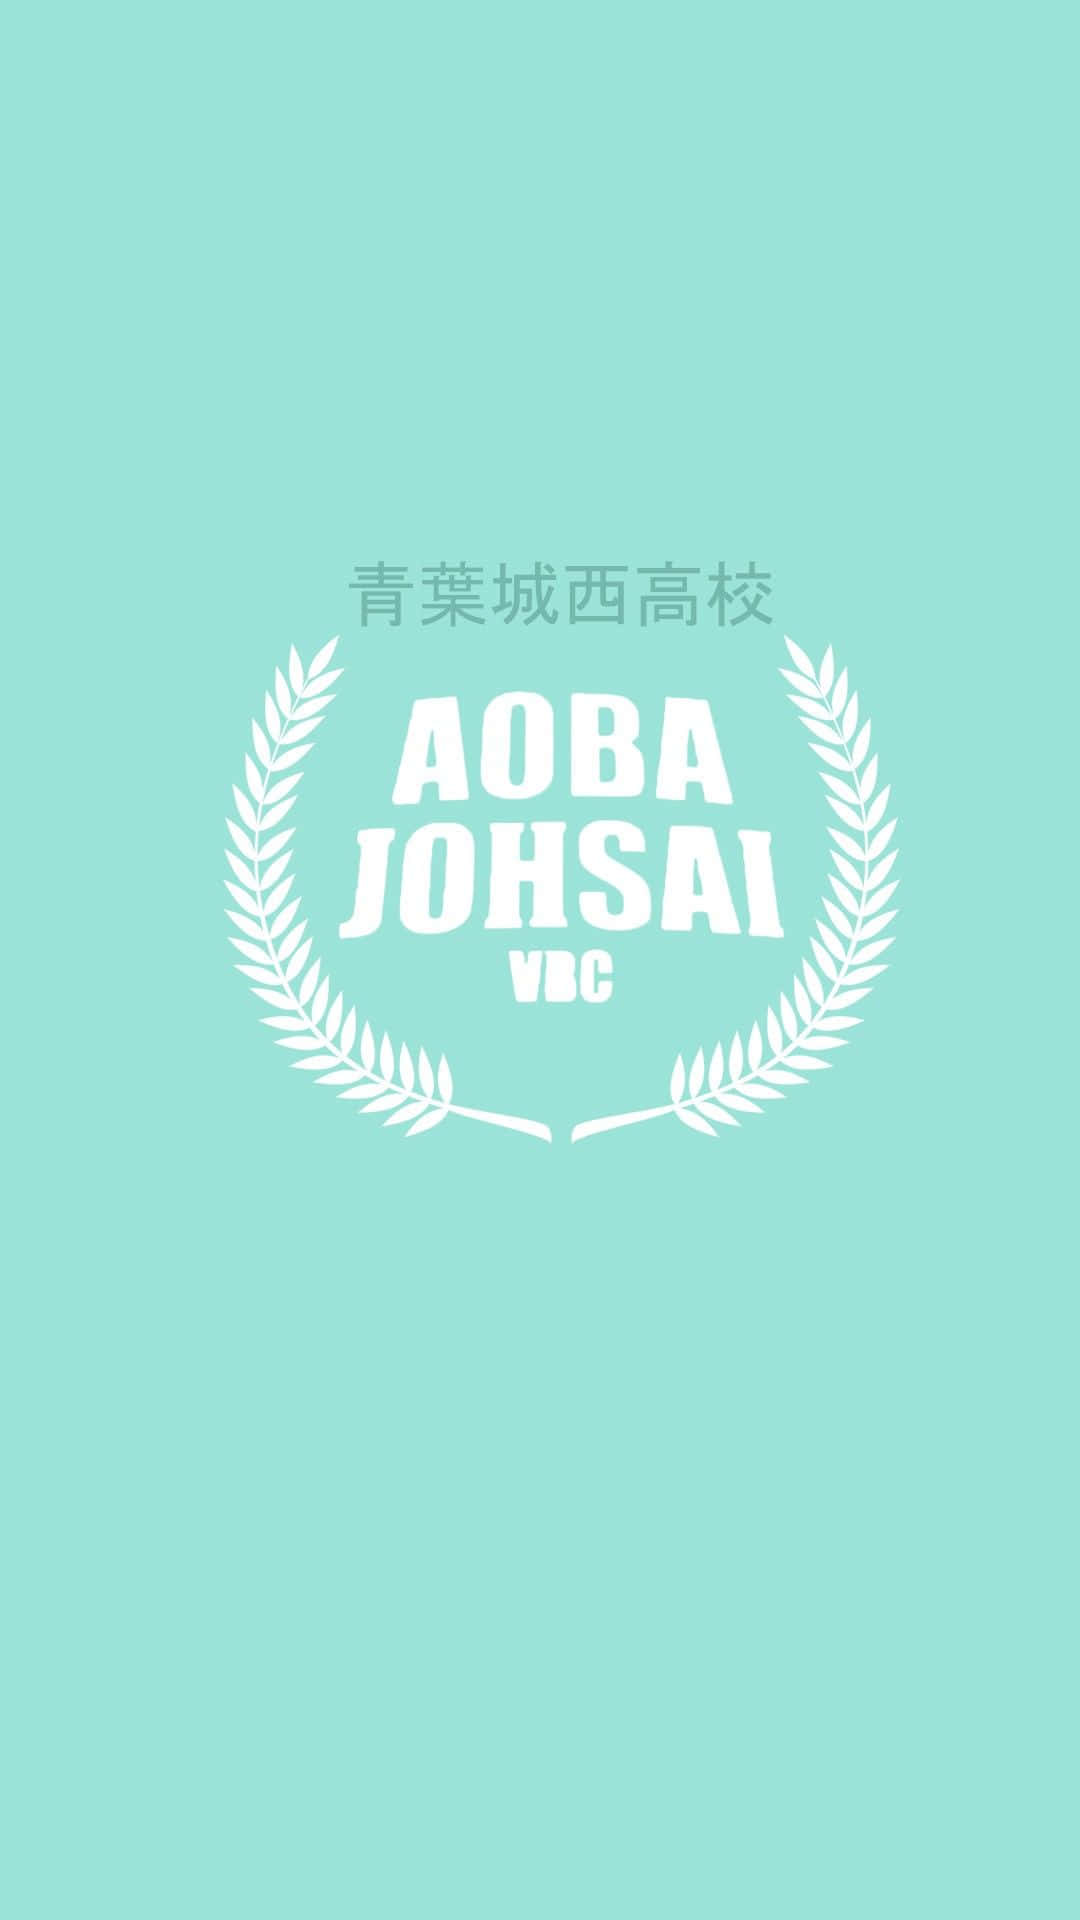 Logodella Scuola Aoba Johsai Sfondo